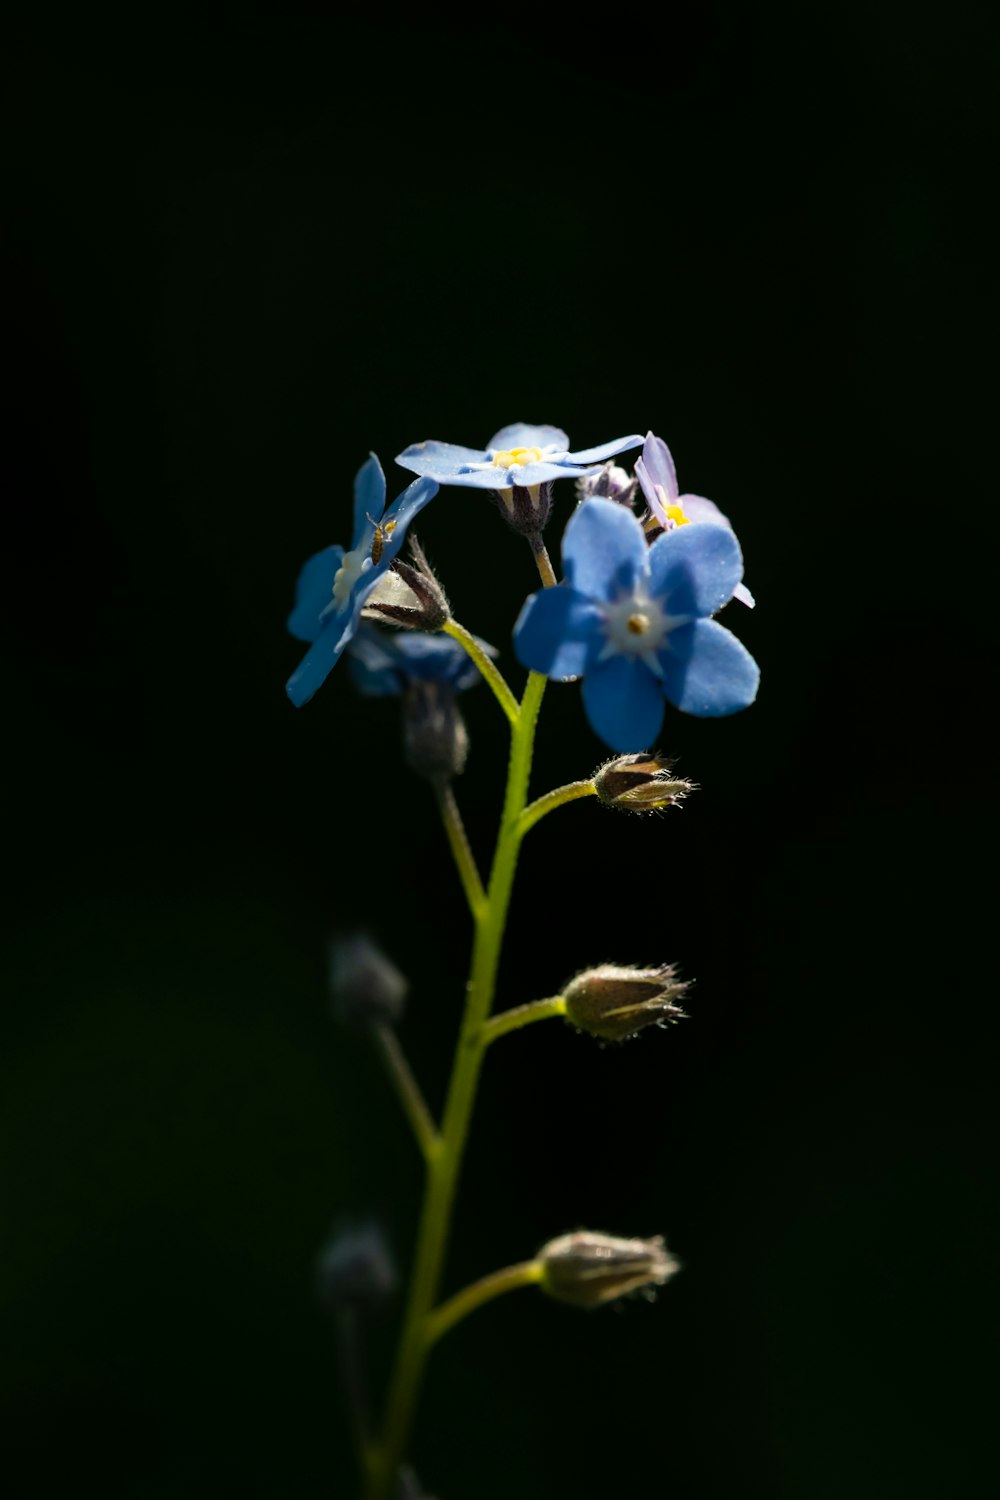 blue and white flowers in tilt shift lens